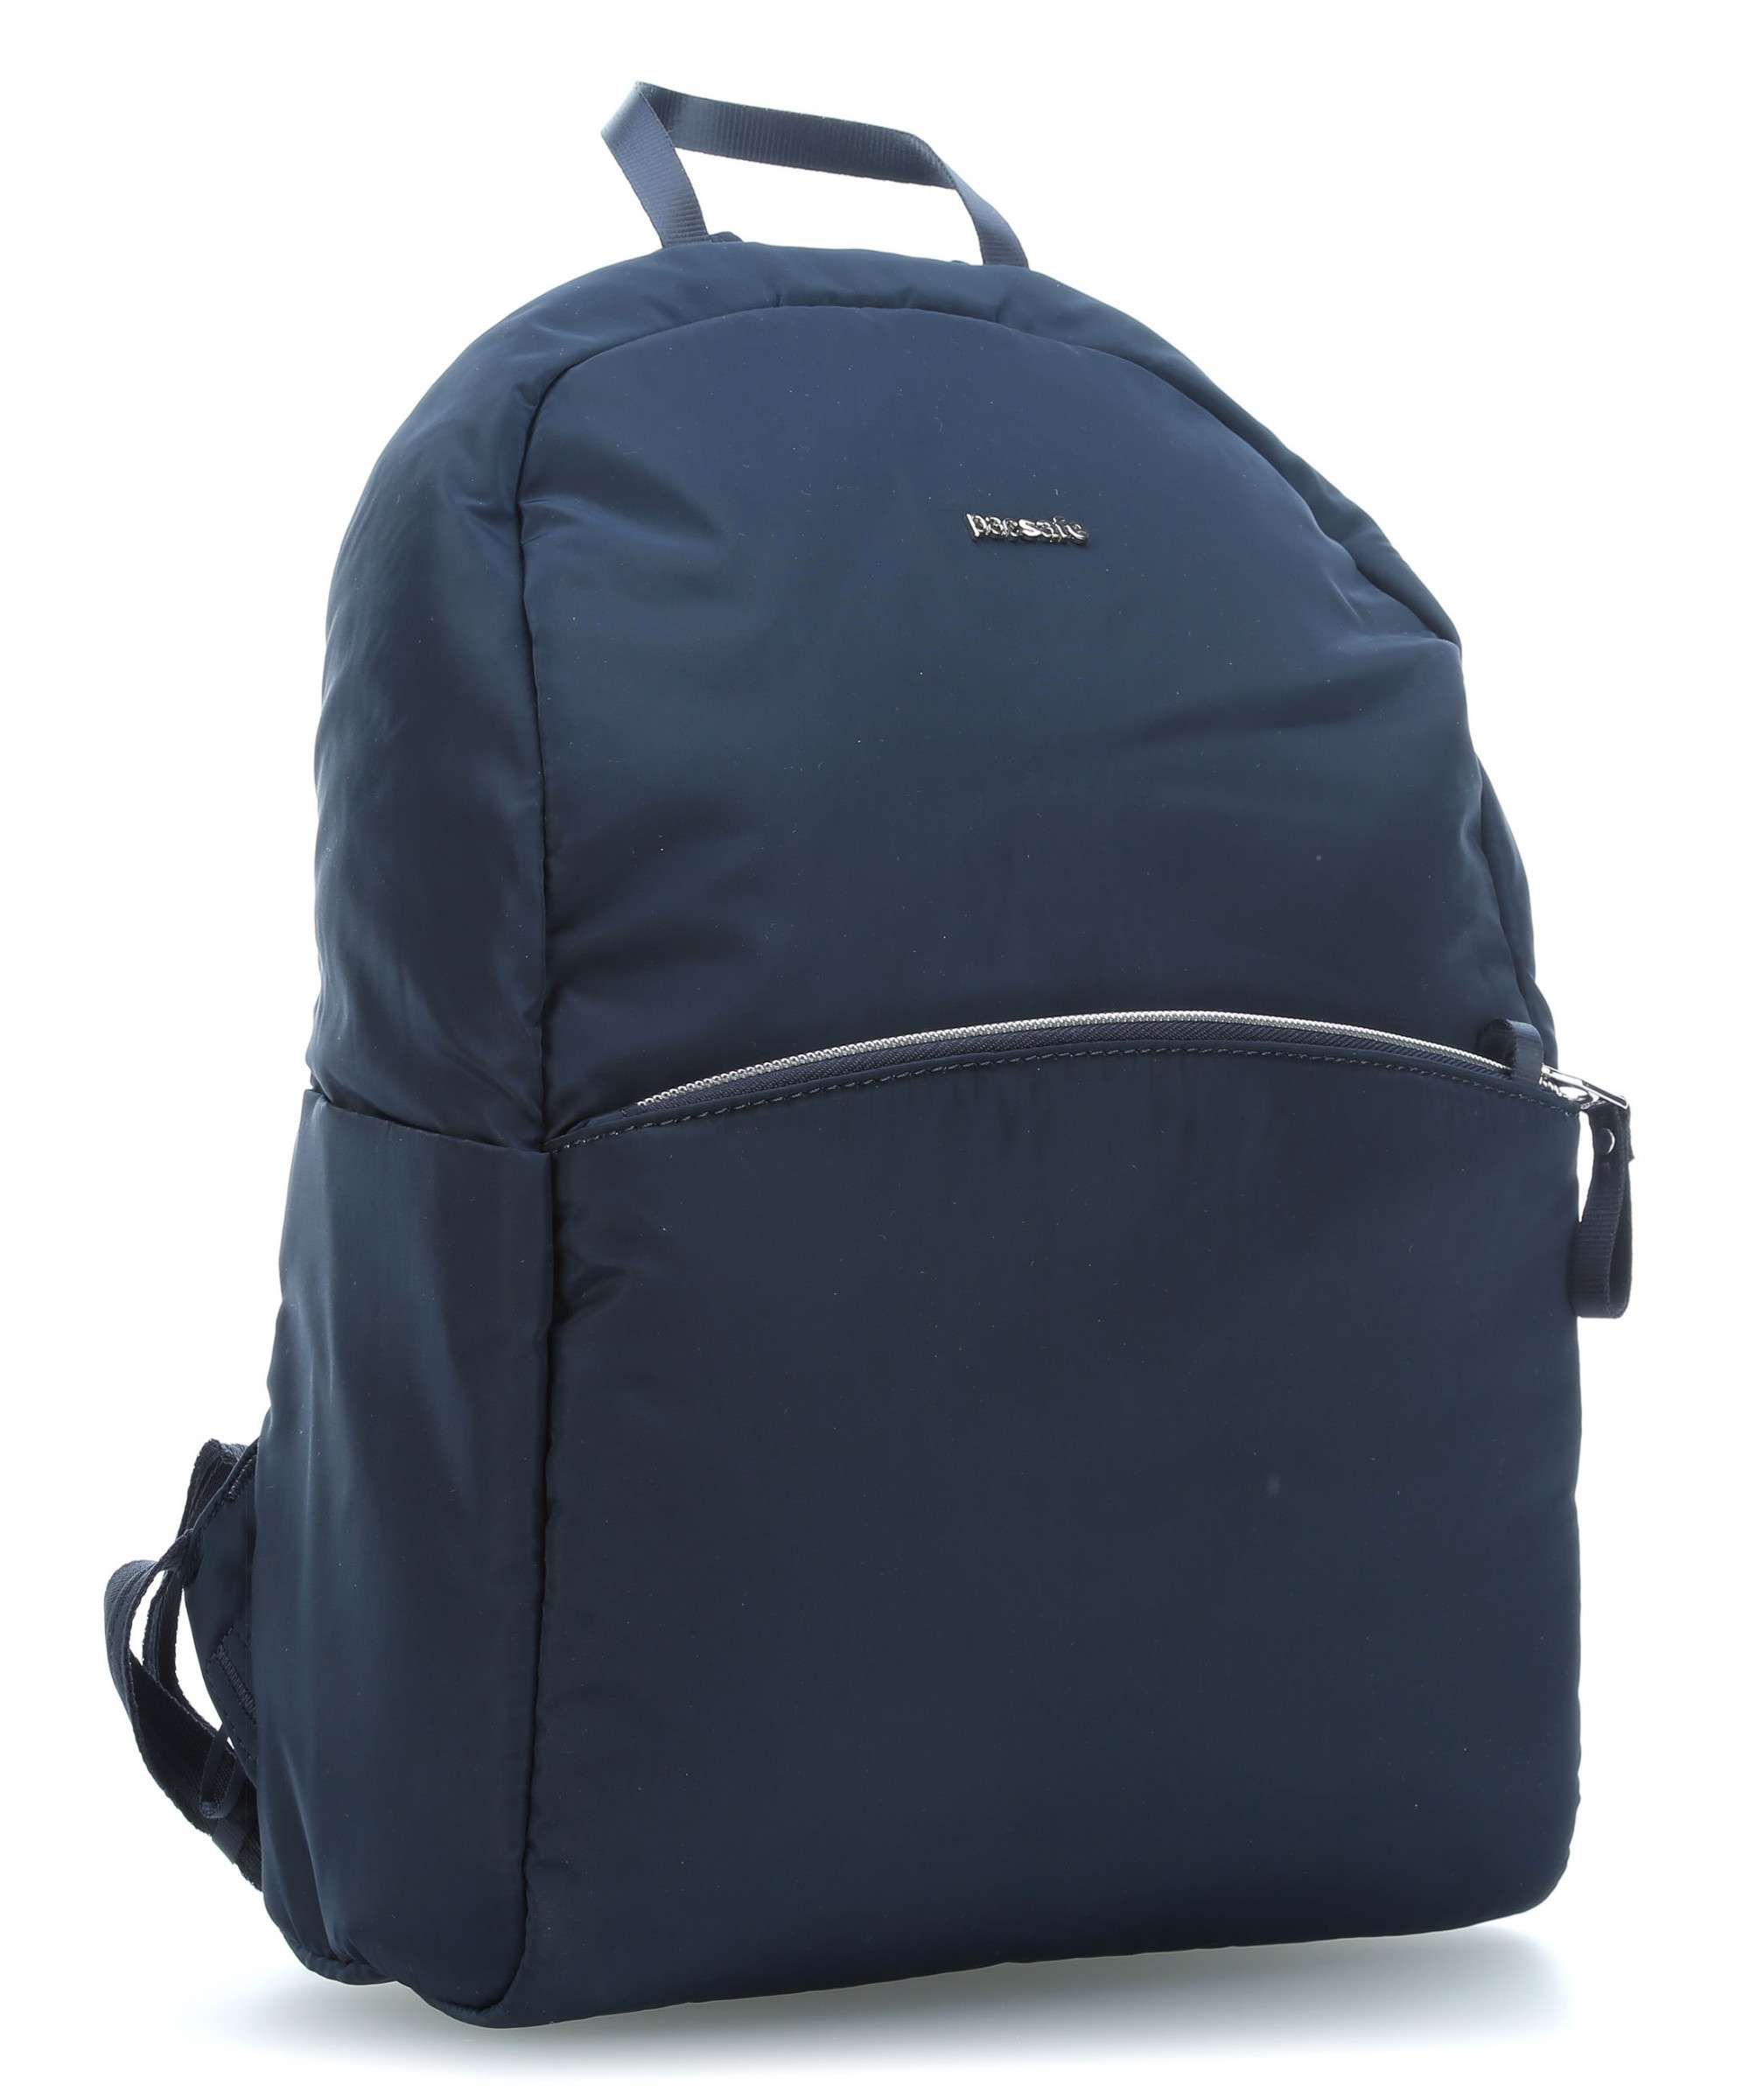    Pacsafe Stylesafe backpack, : , 12 